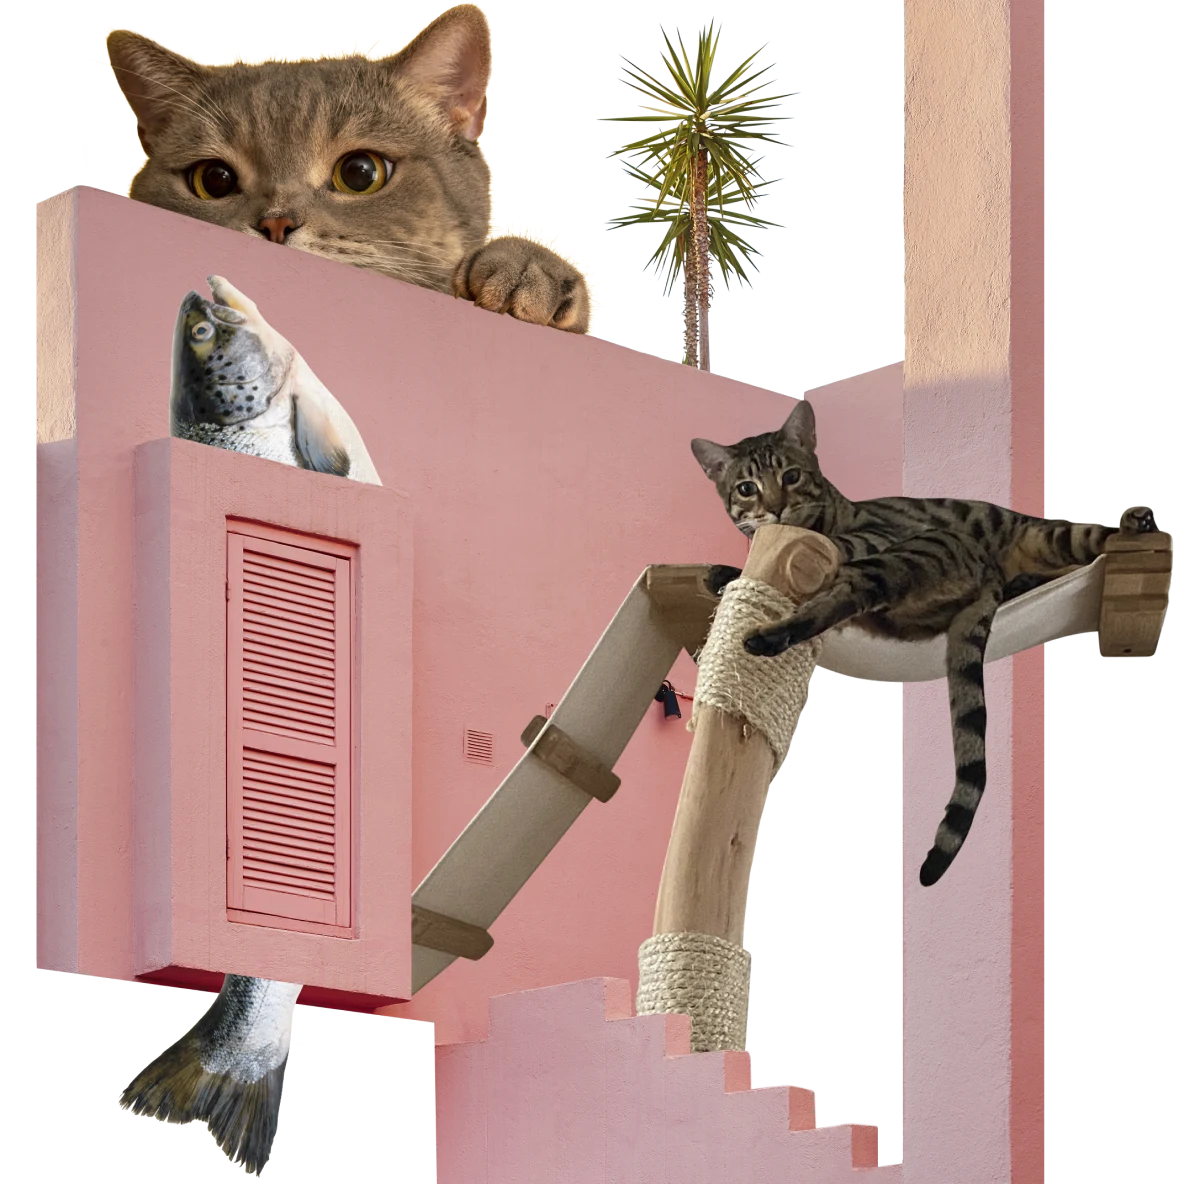 Parte externa de uma casa rosa, com a cabeça de um peixe saindo de uma janela com as persianas fechadas e o rabo do peixe saindo de baixo. Gato rajado deitado em uma pequena rede à direita. Gato laranja espiando por cima do muro.